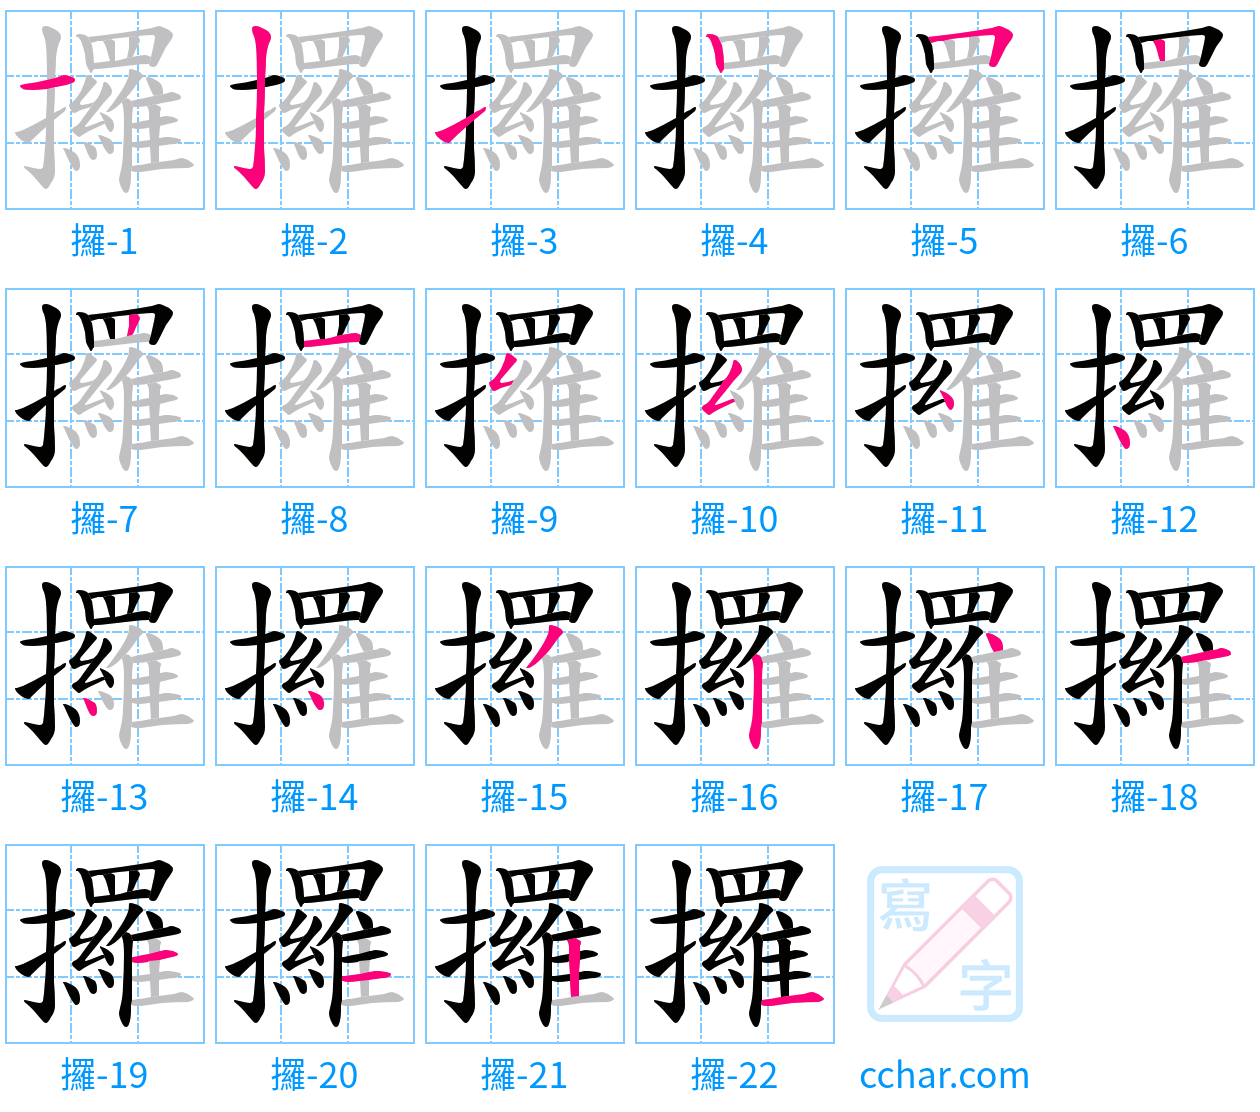 攞 stroke order step-by-step diagram